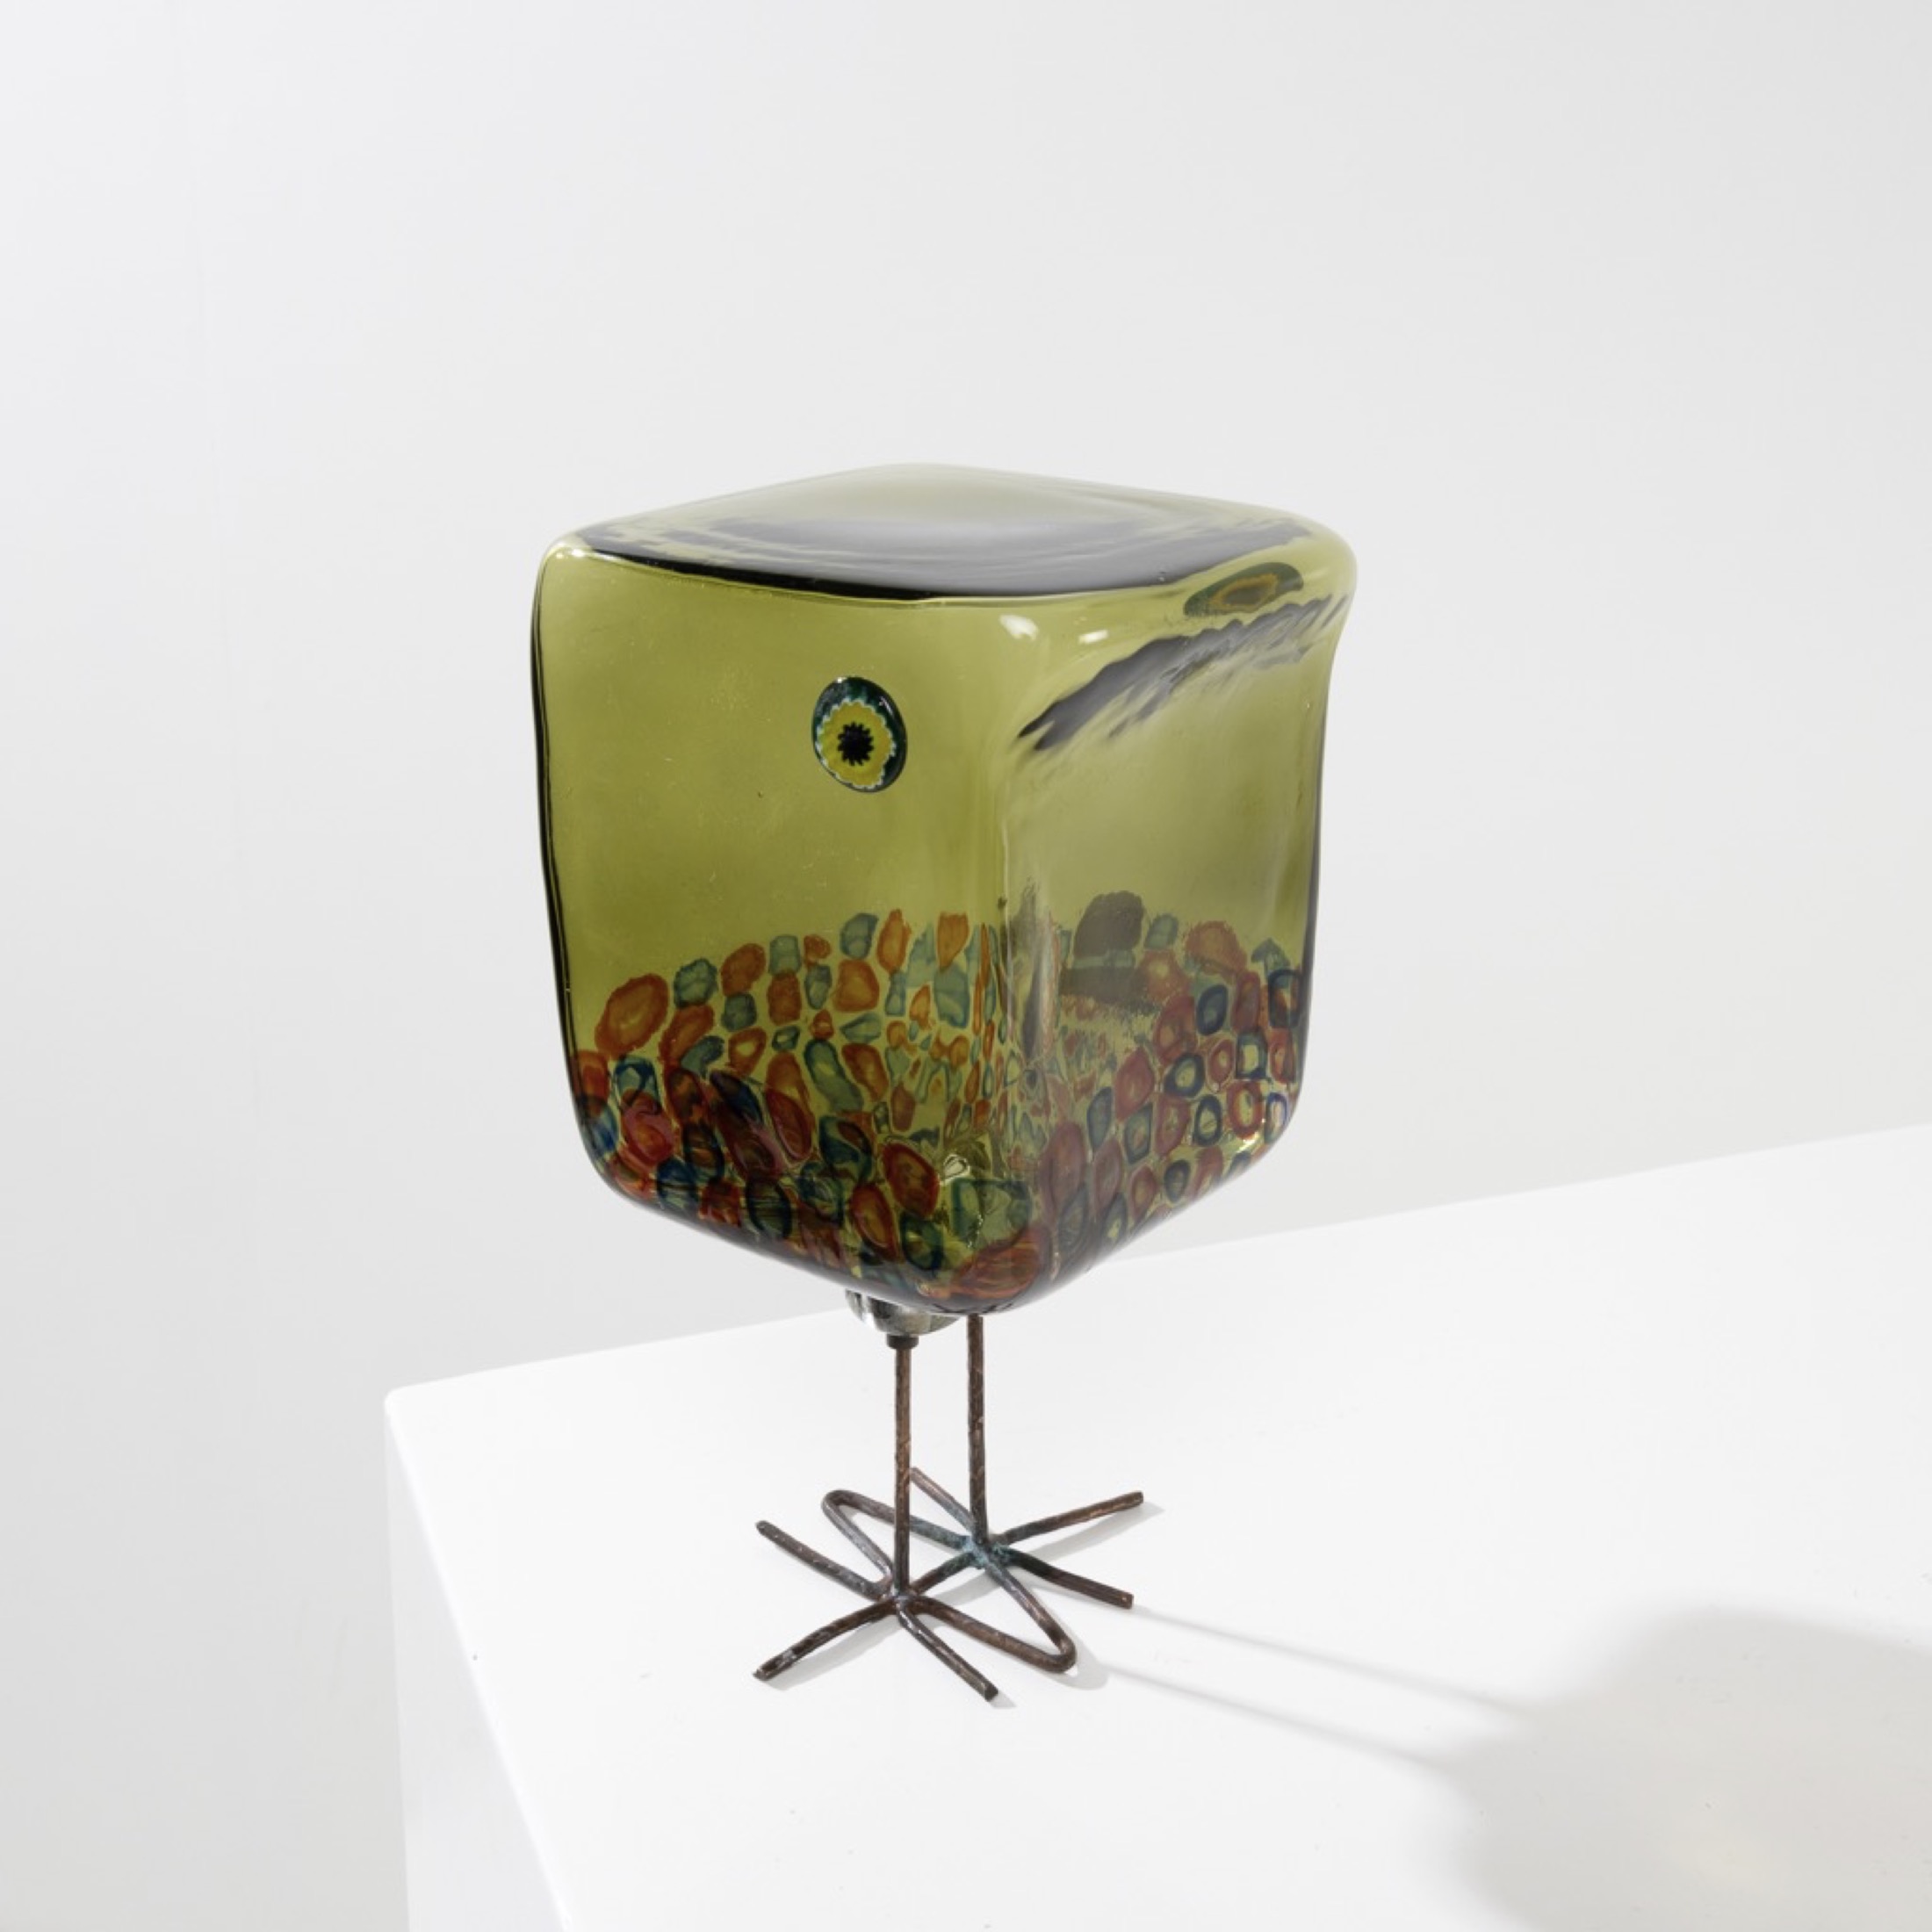 Pulcino sculpture in the shape of a glass bird Alessandro Pianon Vistosi Murano